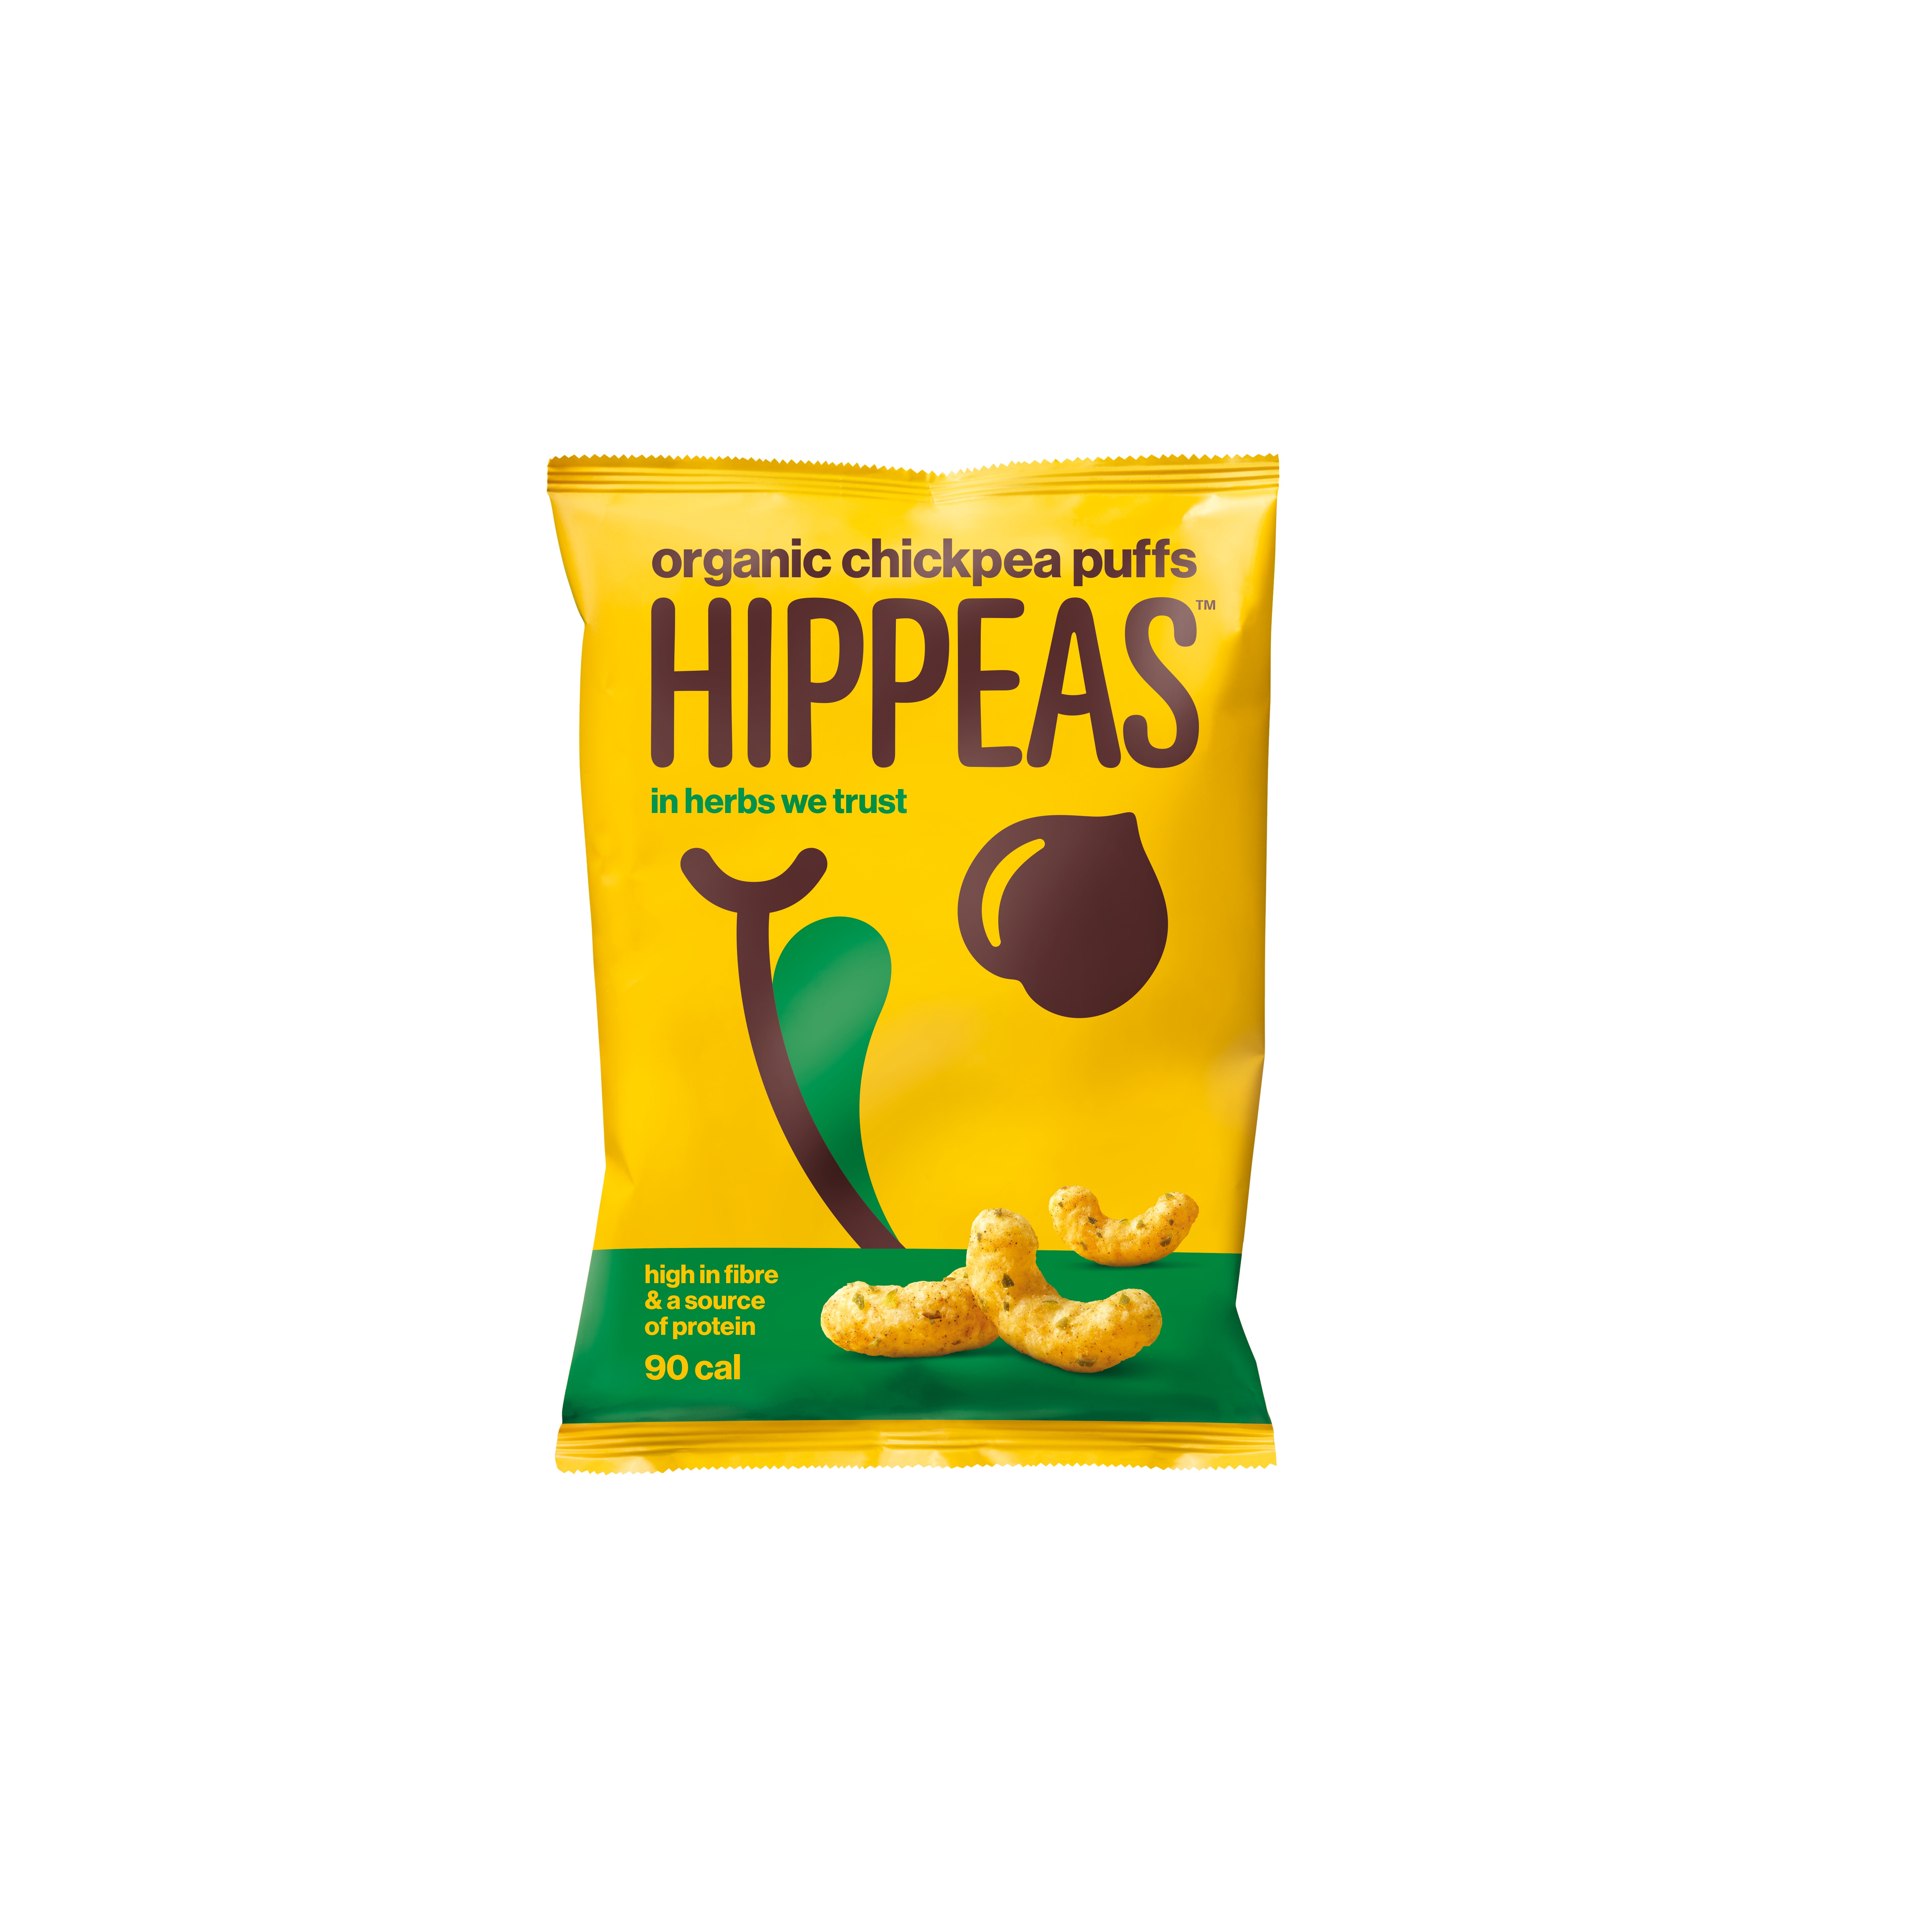 70771 Hippeas cin herbs we trust 24x 22gr